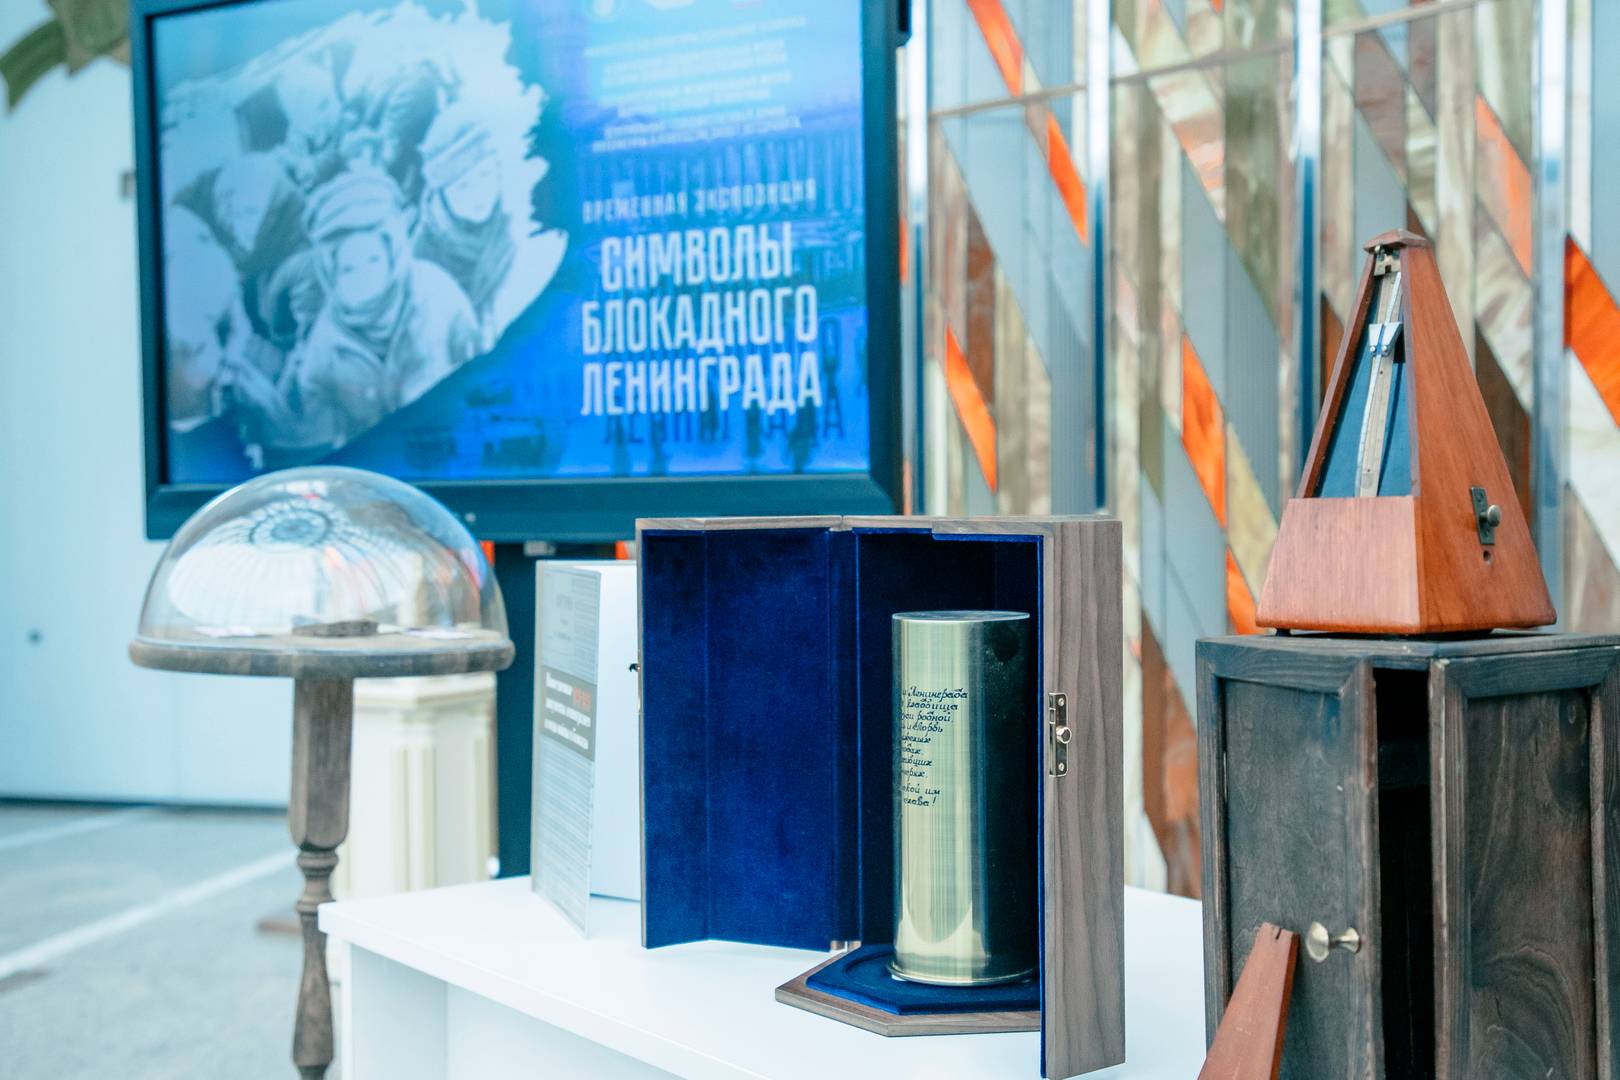 Открытие выставки «Символы блокадного Ленинграда» в Белорусском государственном музее истории Великой Отечественной войны